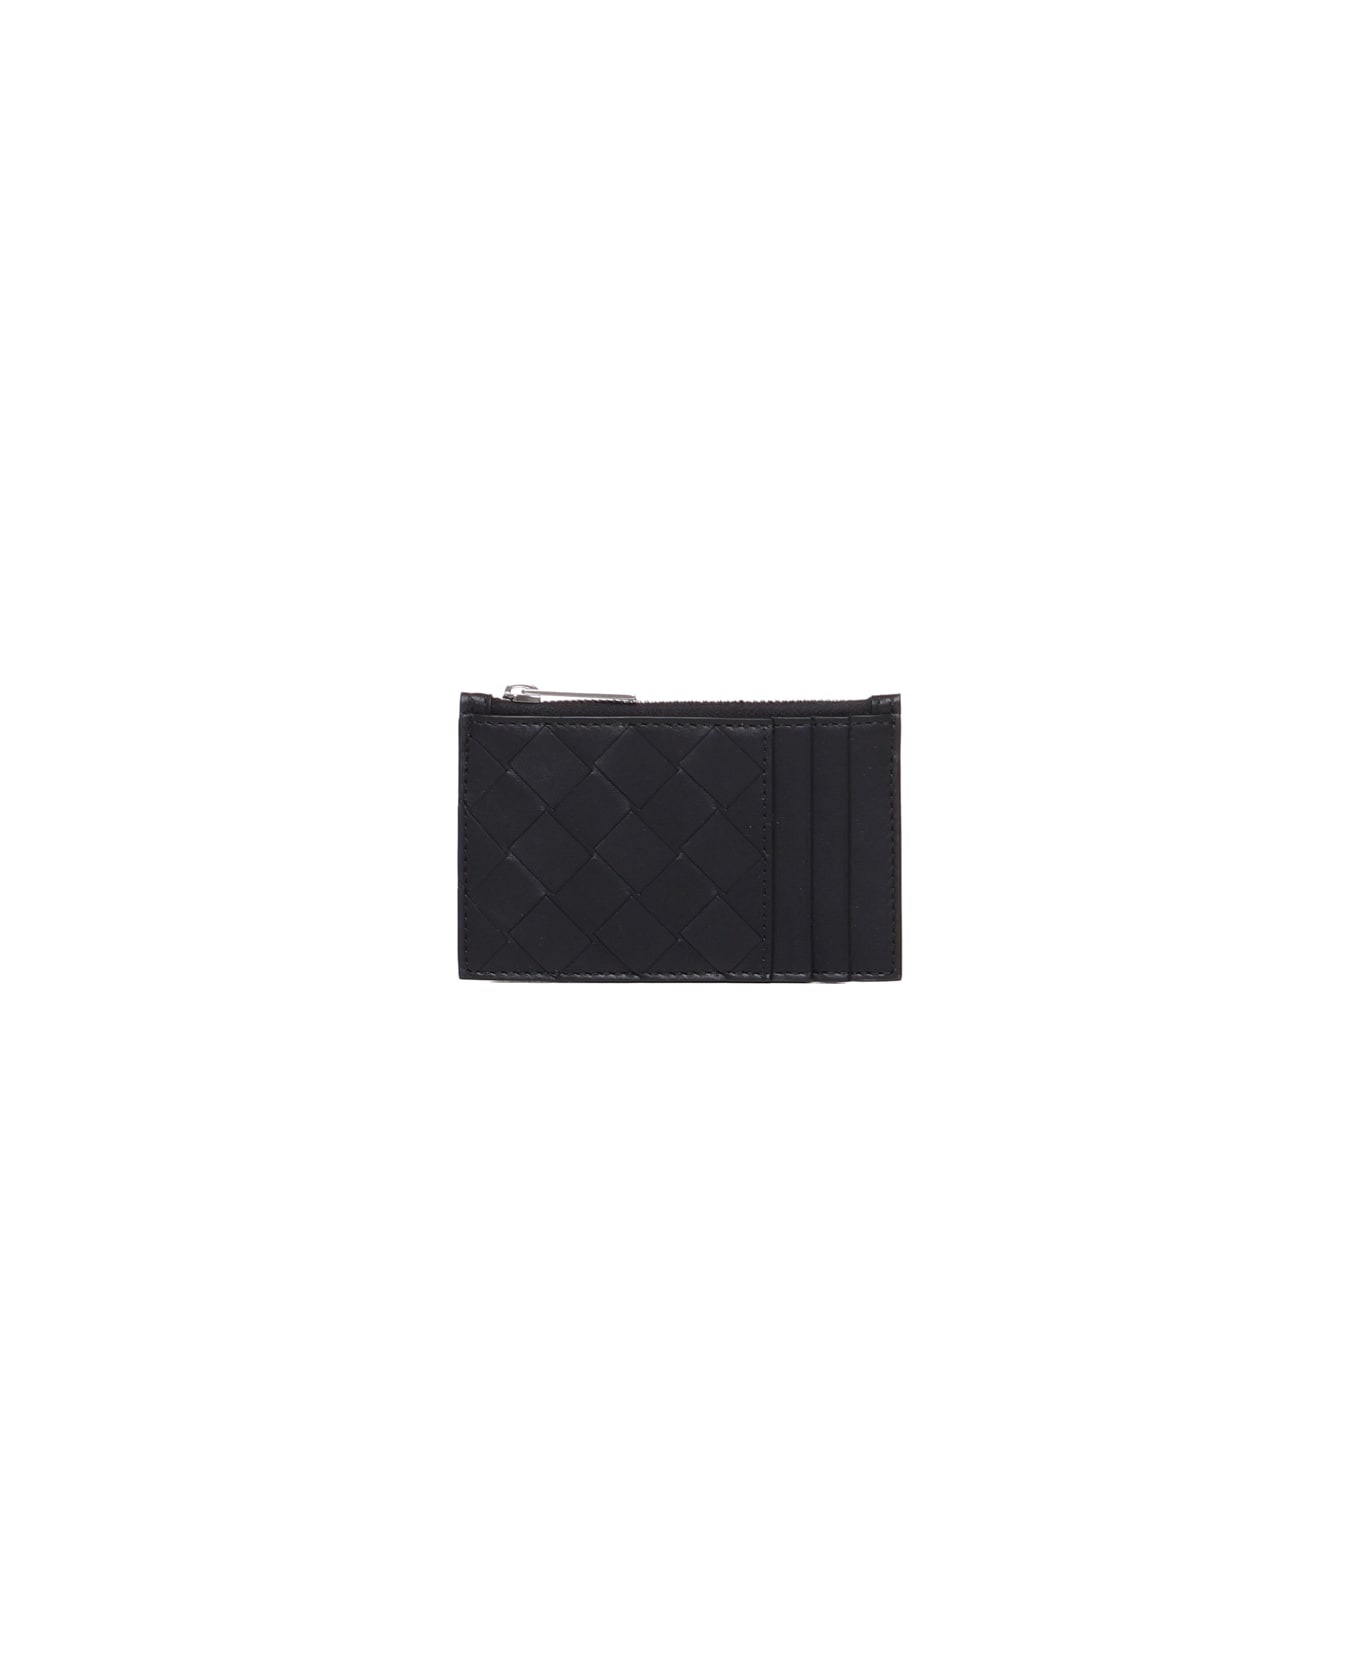 Black Leather Card Holder - 1